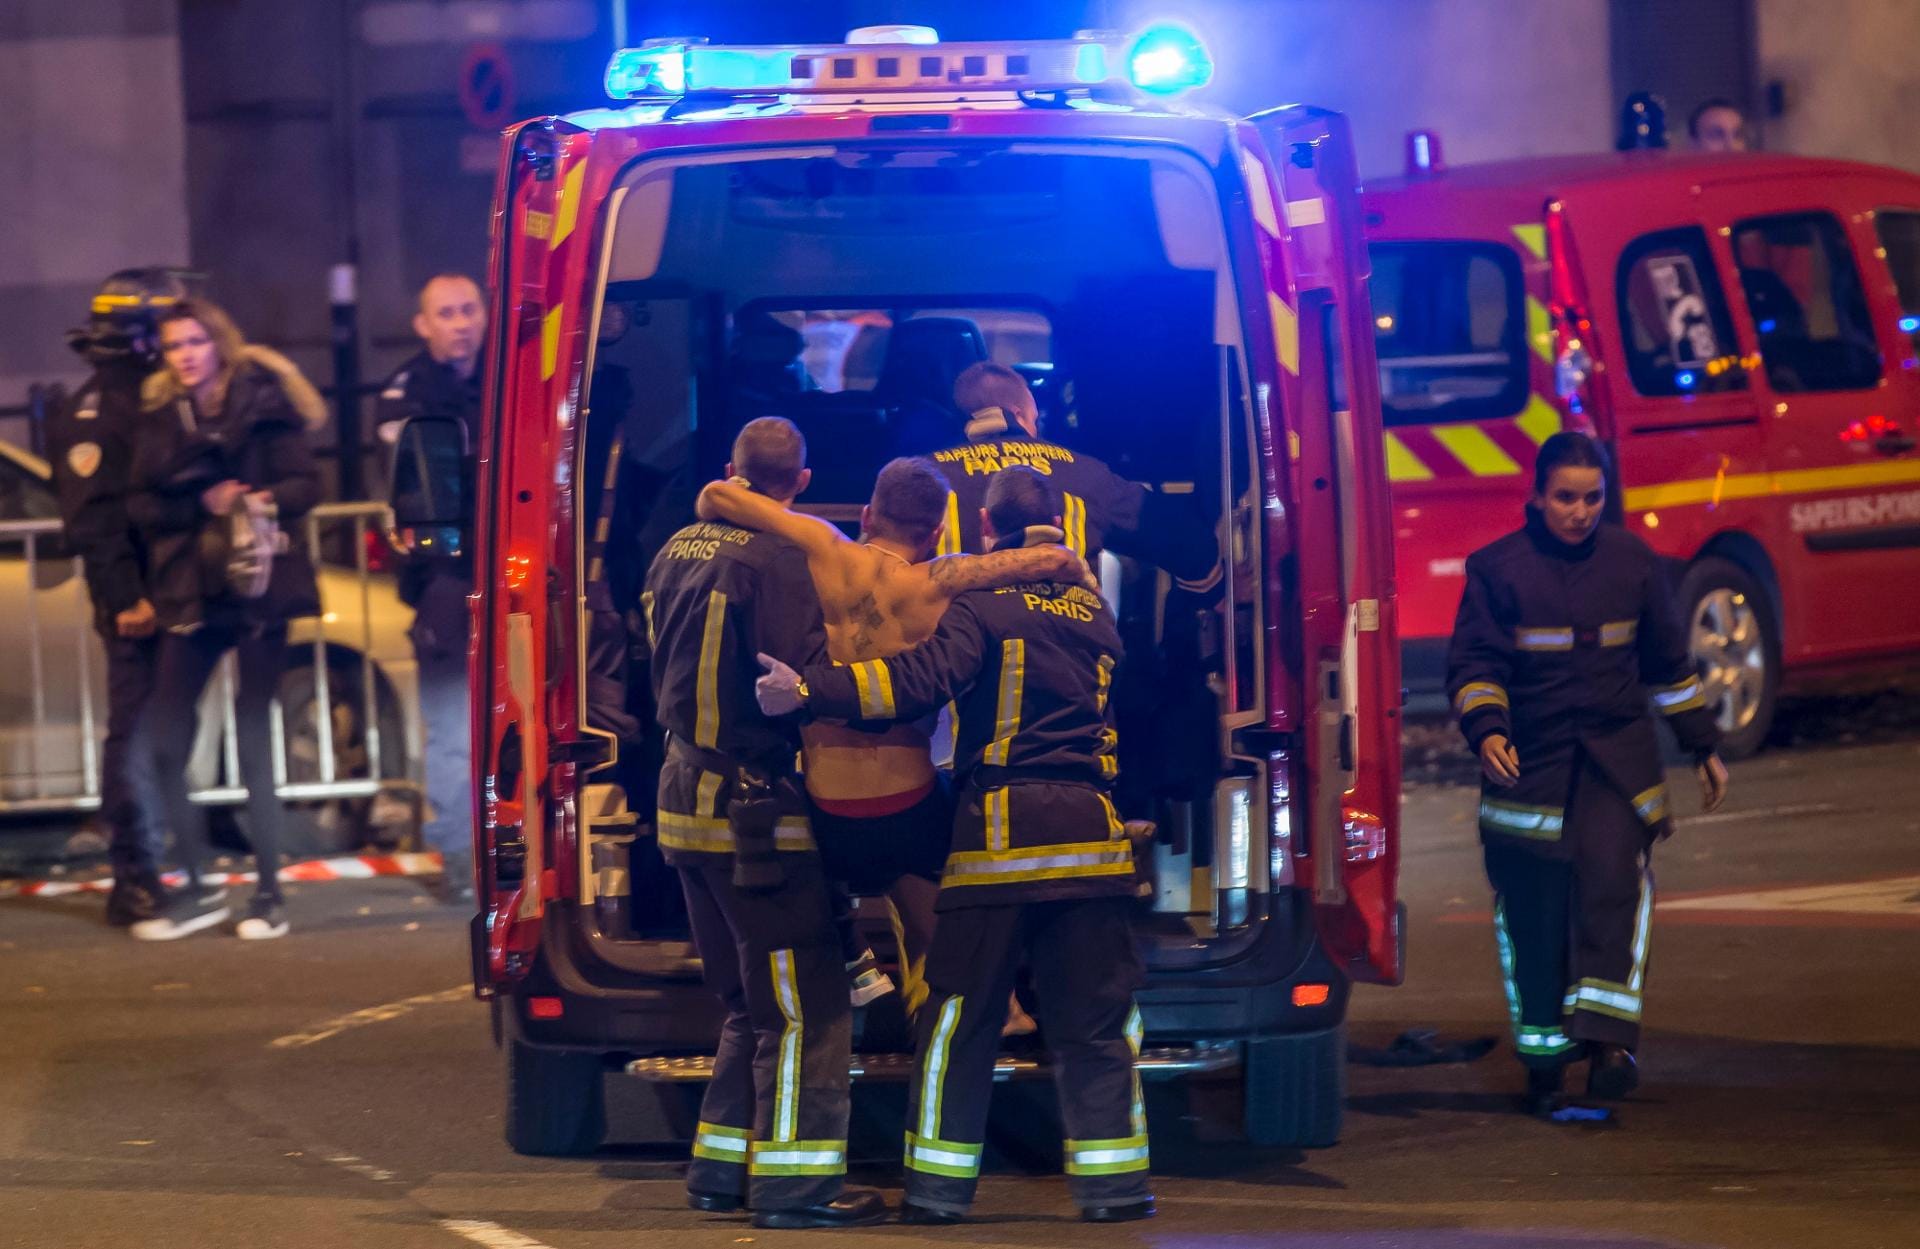 Noch während am Freitagabend das Fußballspiel Deutschland gegen Frankreich lief, gab es mehrere Explosionen in der Nähe des Stadions. Feuerwehrleute kümmerten sich um einen Verletzten.